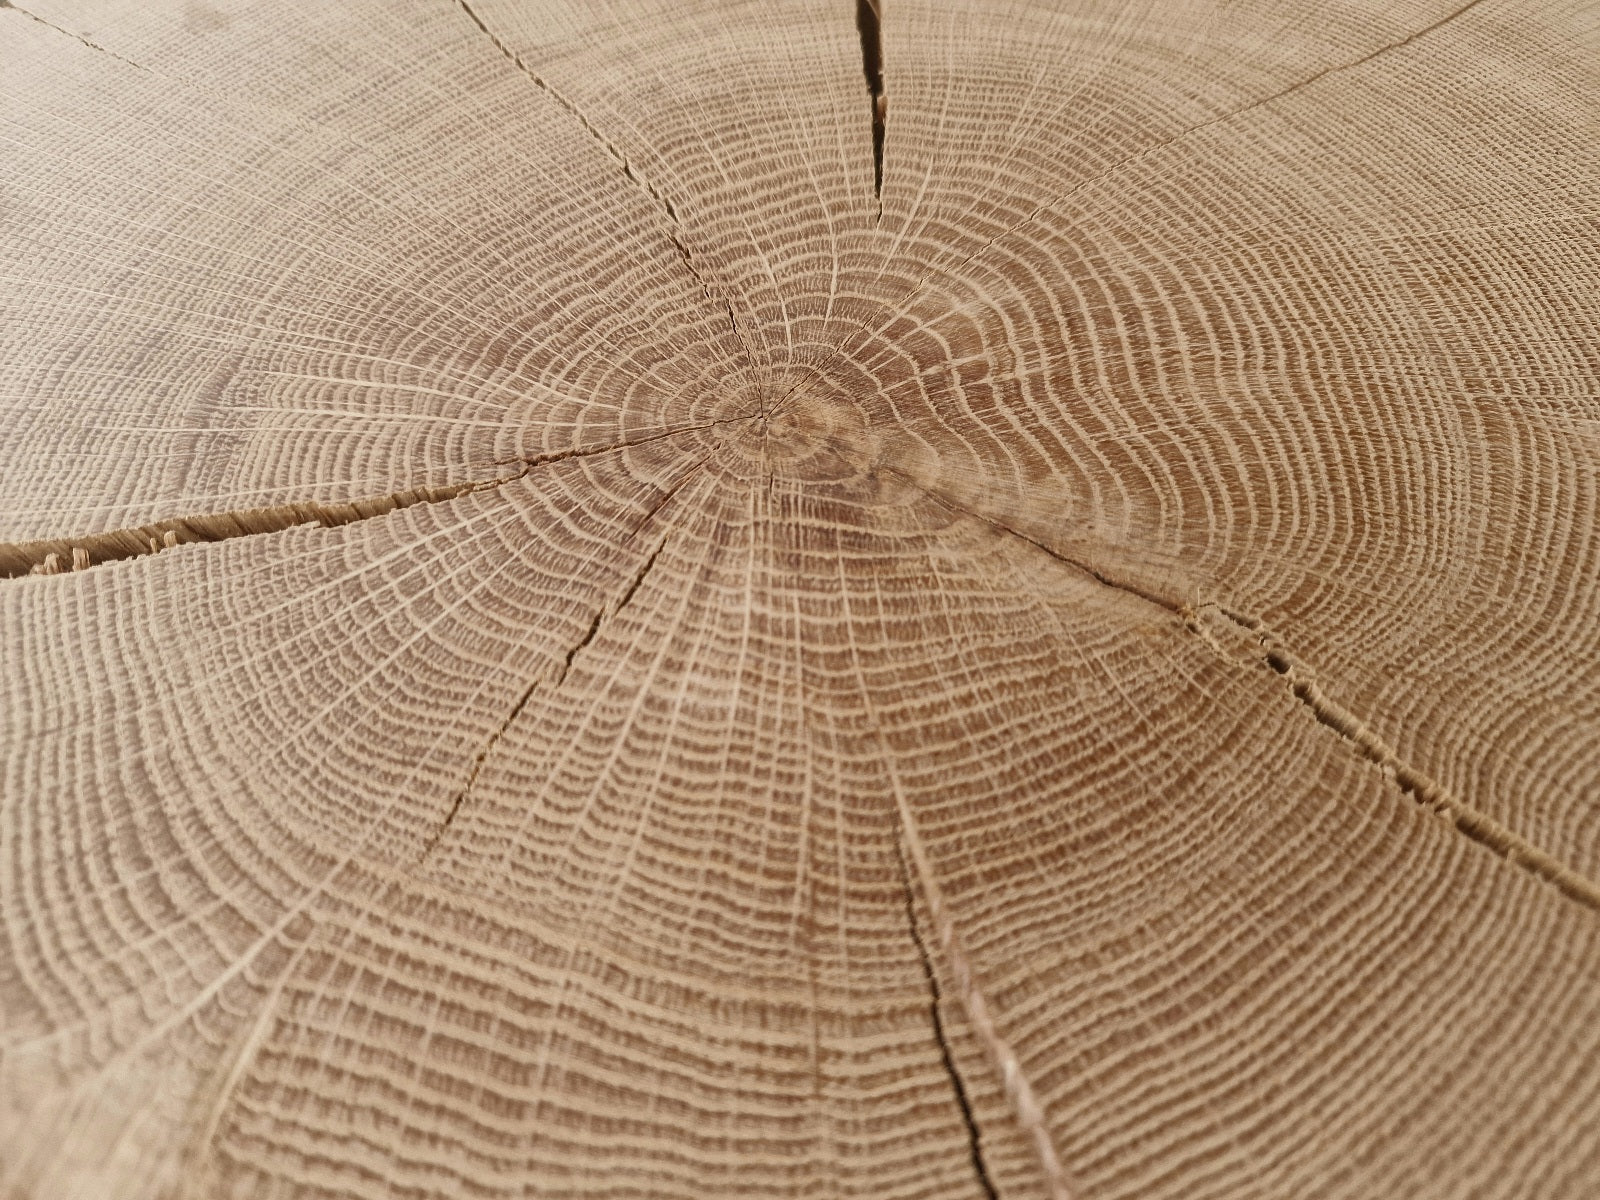 Jahresringe Nahaufnahme von einem Eiche Holzbild.